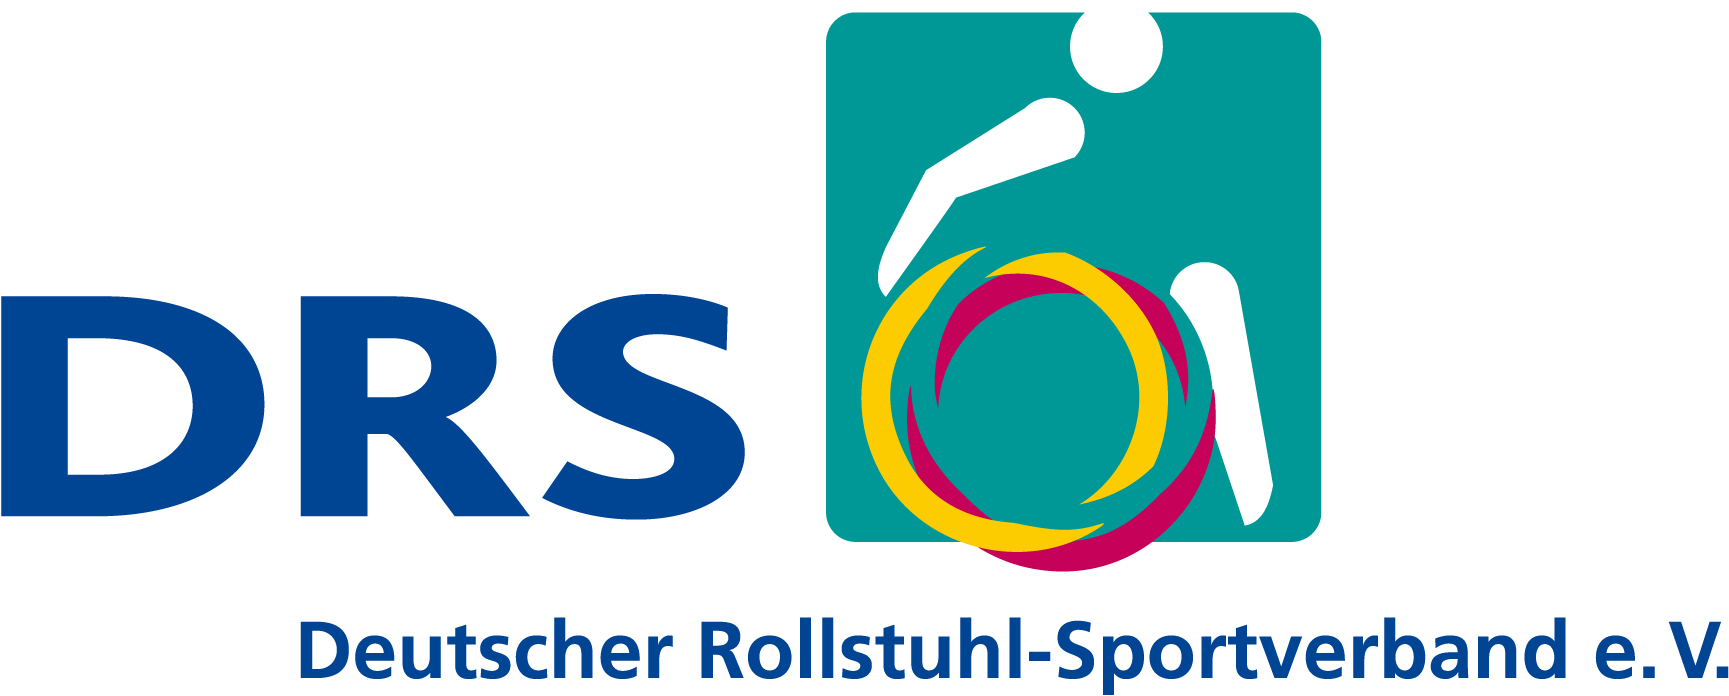 Deutscher Rollstuhl-Sportverband e. V.